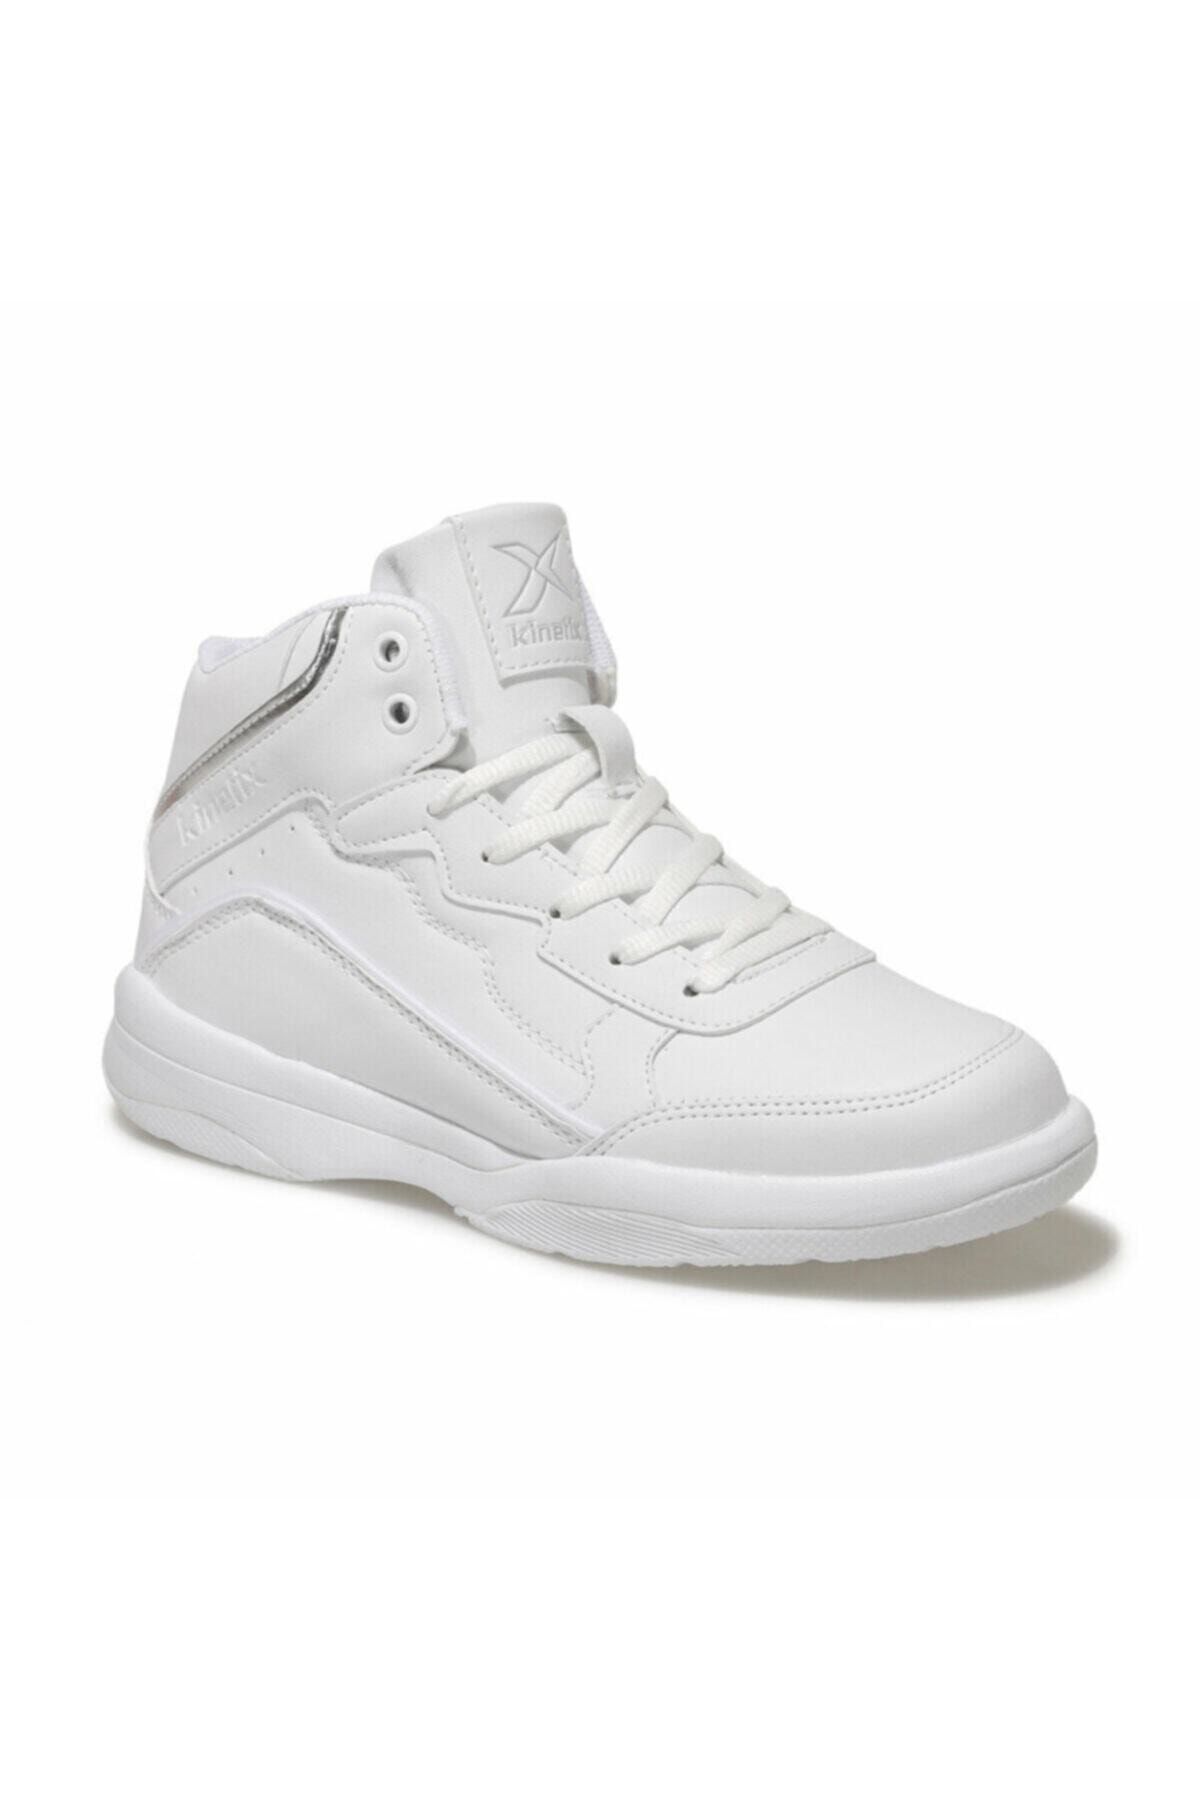 Kinetix VIVID W Beyaz Kadın Sneaker Ayakkabı 100544511